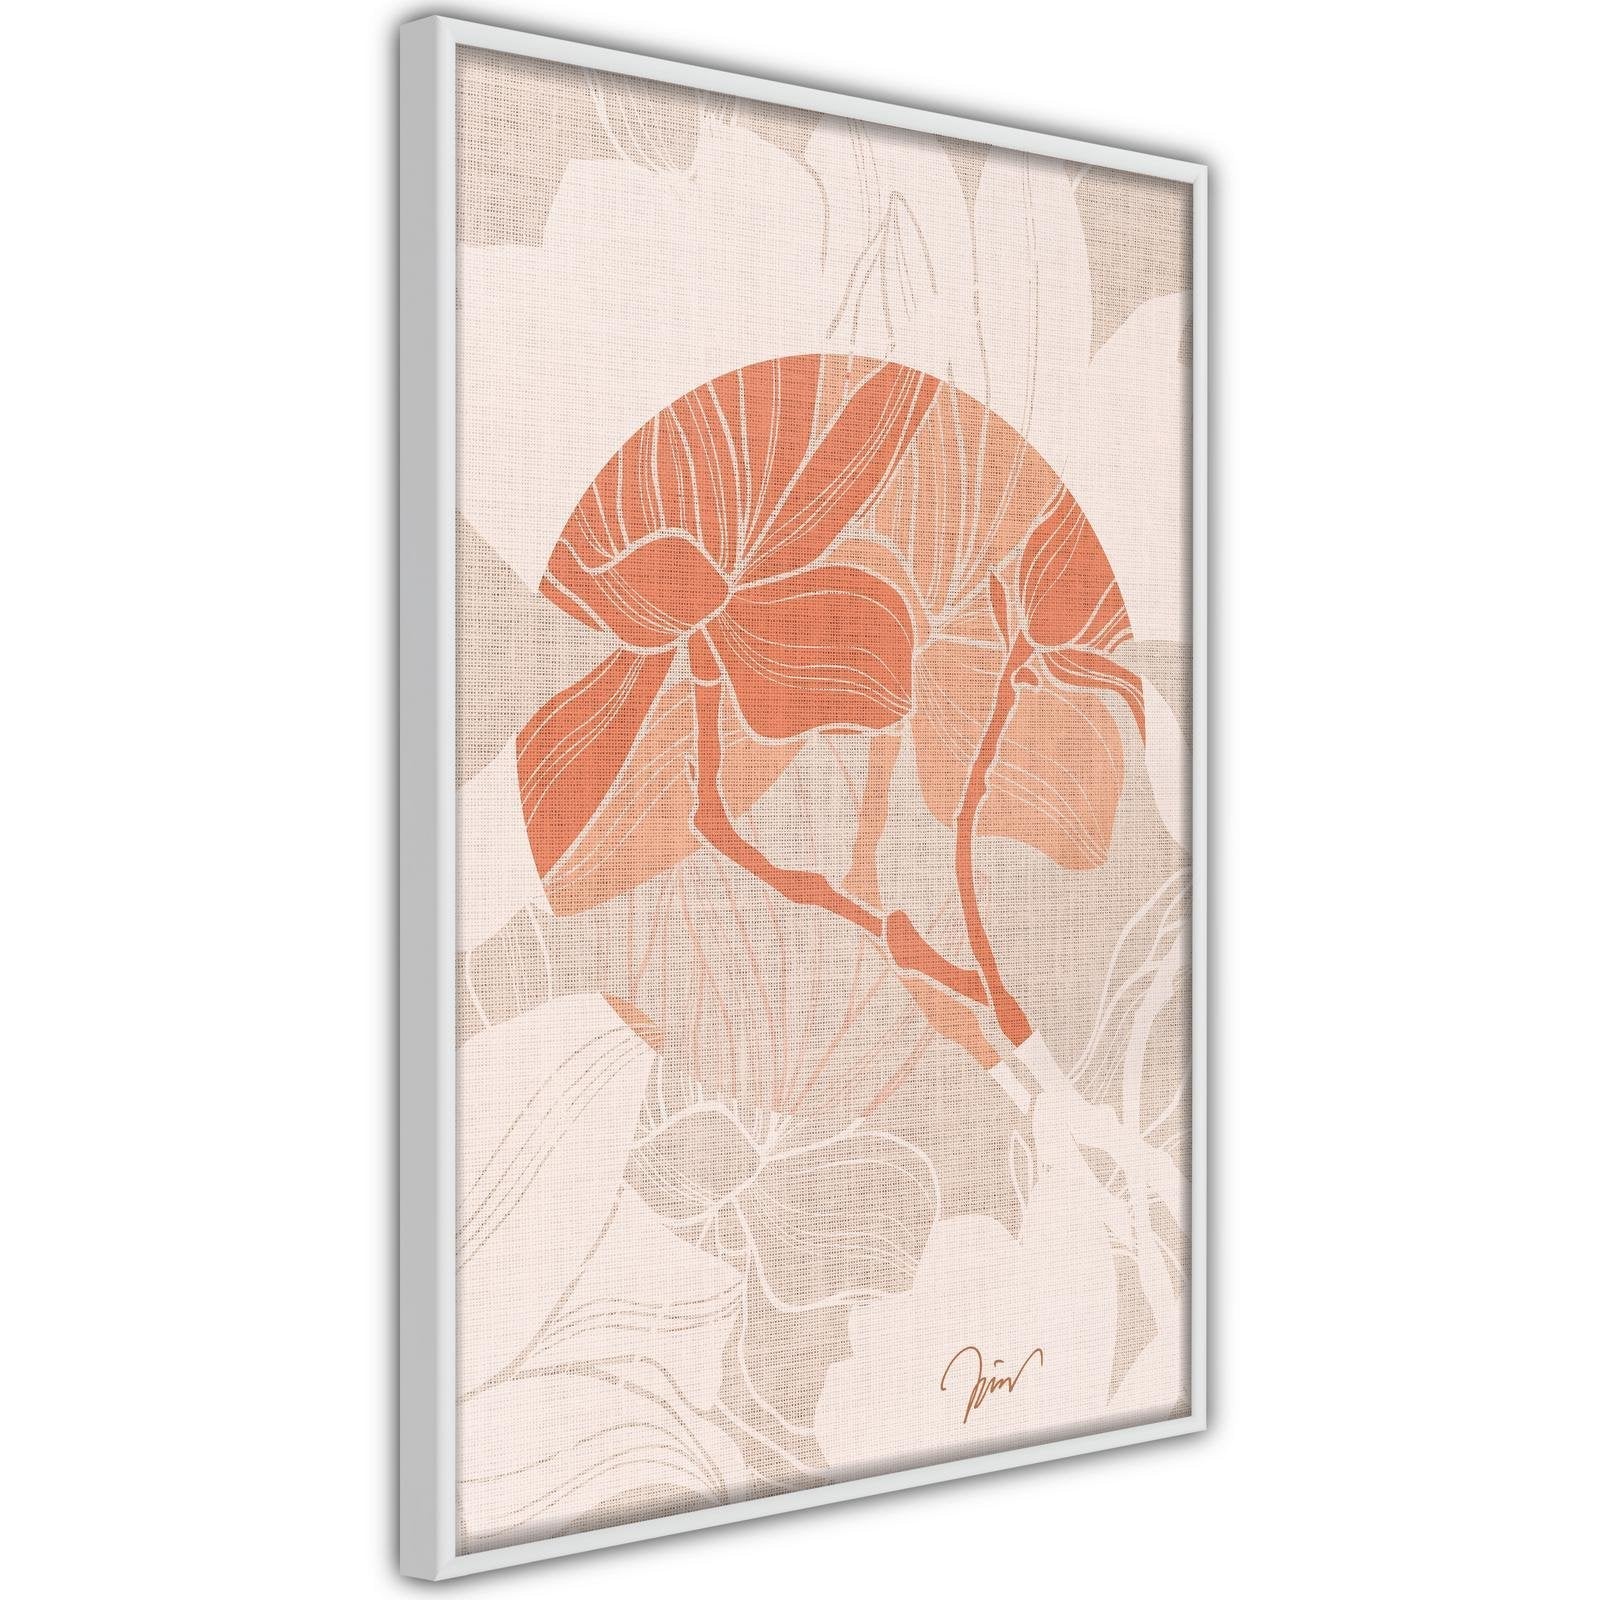 Inramad Poster / Tavla - Flowers on Fabric-Poster Inramad-Artgeist-peaceofhome.se